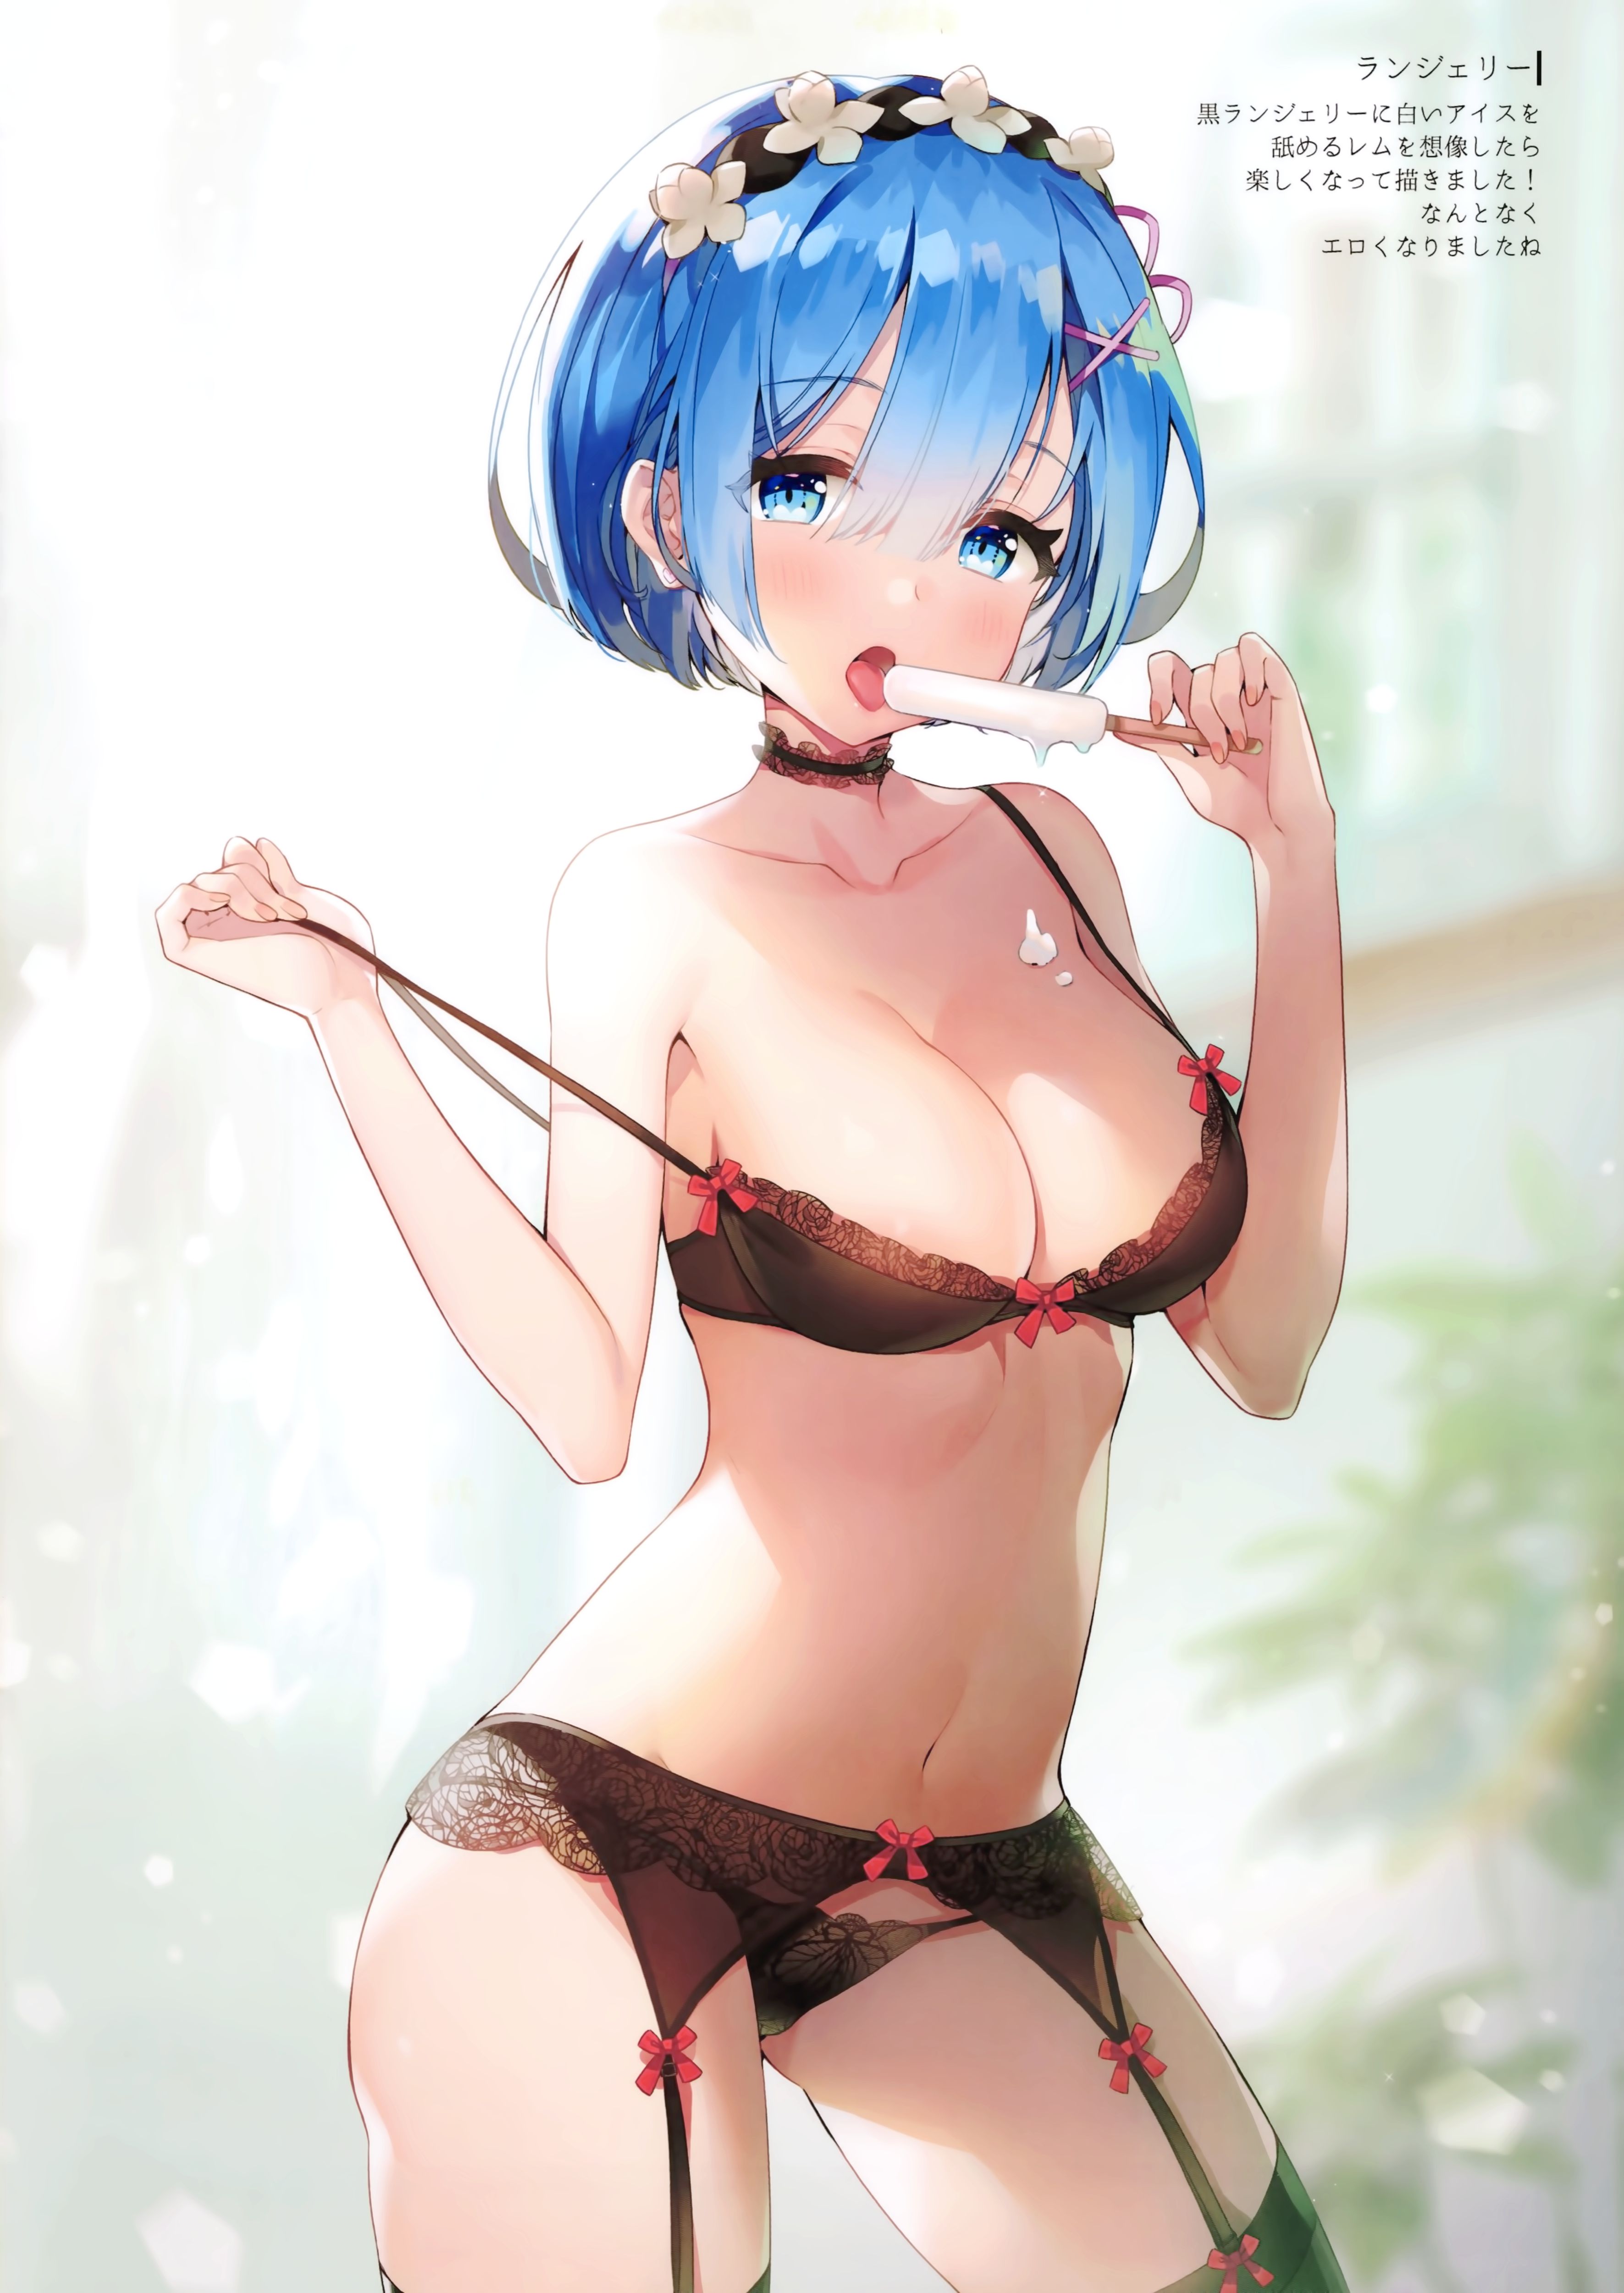 Rezero's Oni Kawaii Erotica Image Summary. vol.5 13